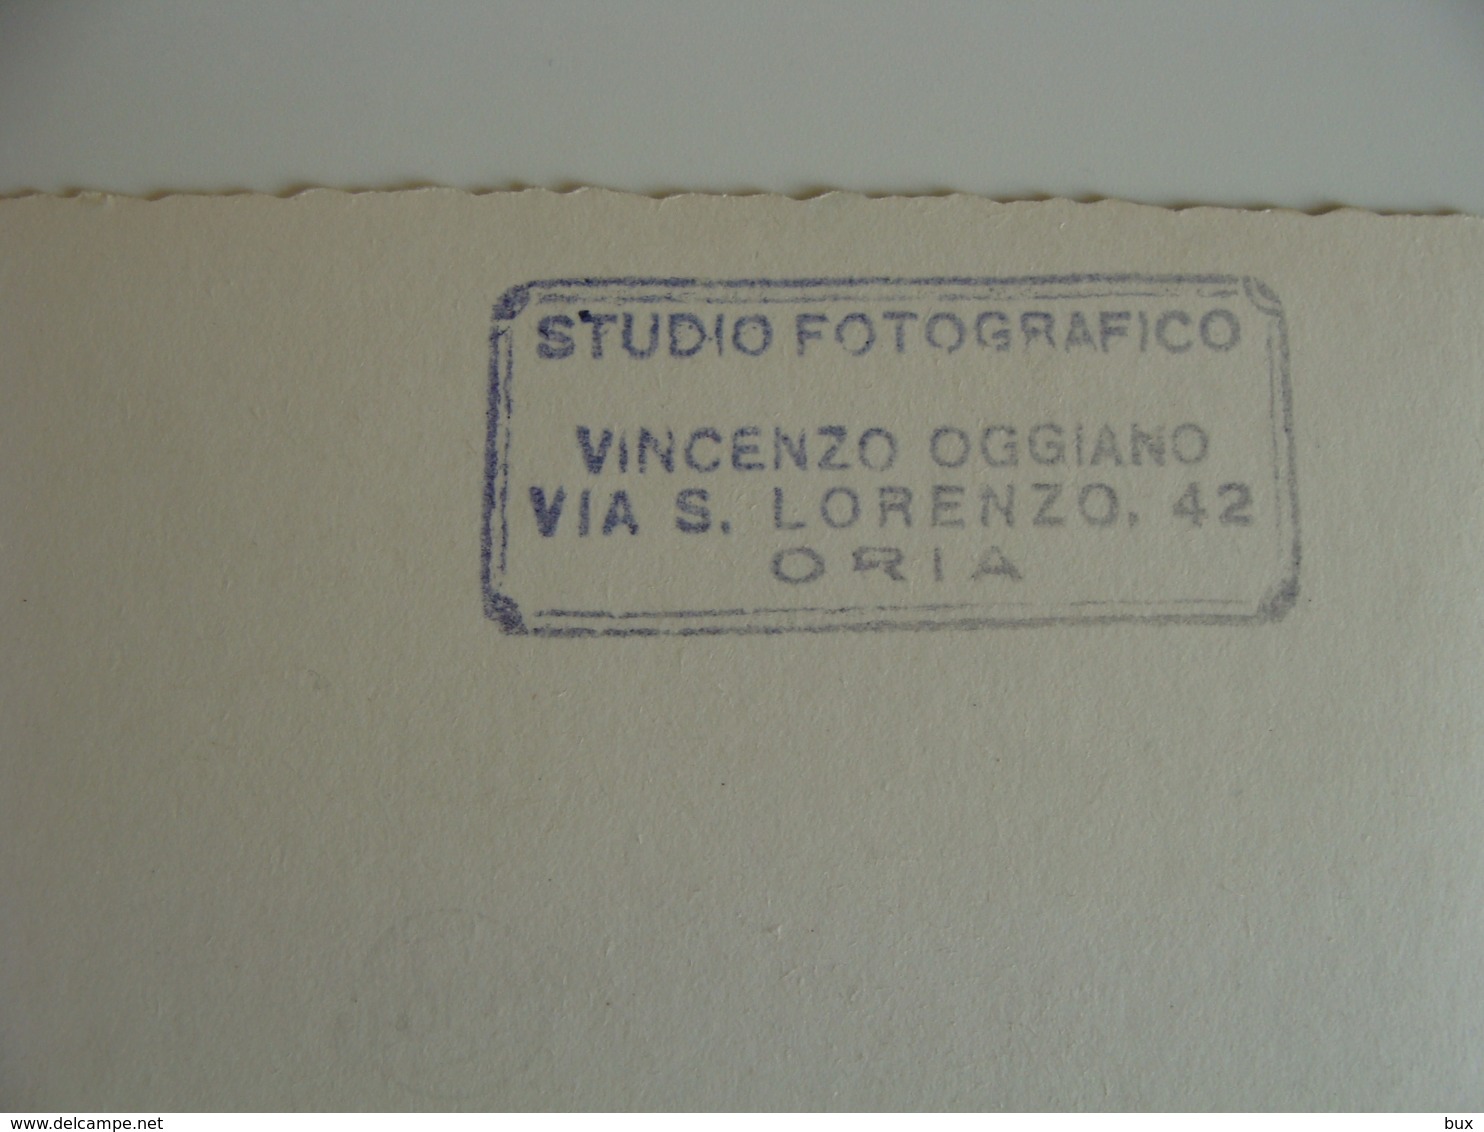 POLIZIA URBANA  POSA CORONA SUL CARTELLO 1962  FOTO  VINCENZO OGGIANO   VIA S. LORENZO ORIA  15   X  10,5  Cm CIRCA - Lieux